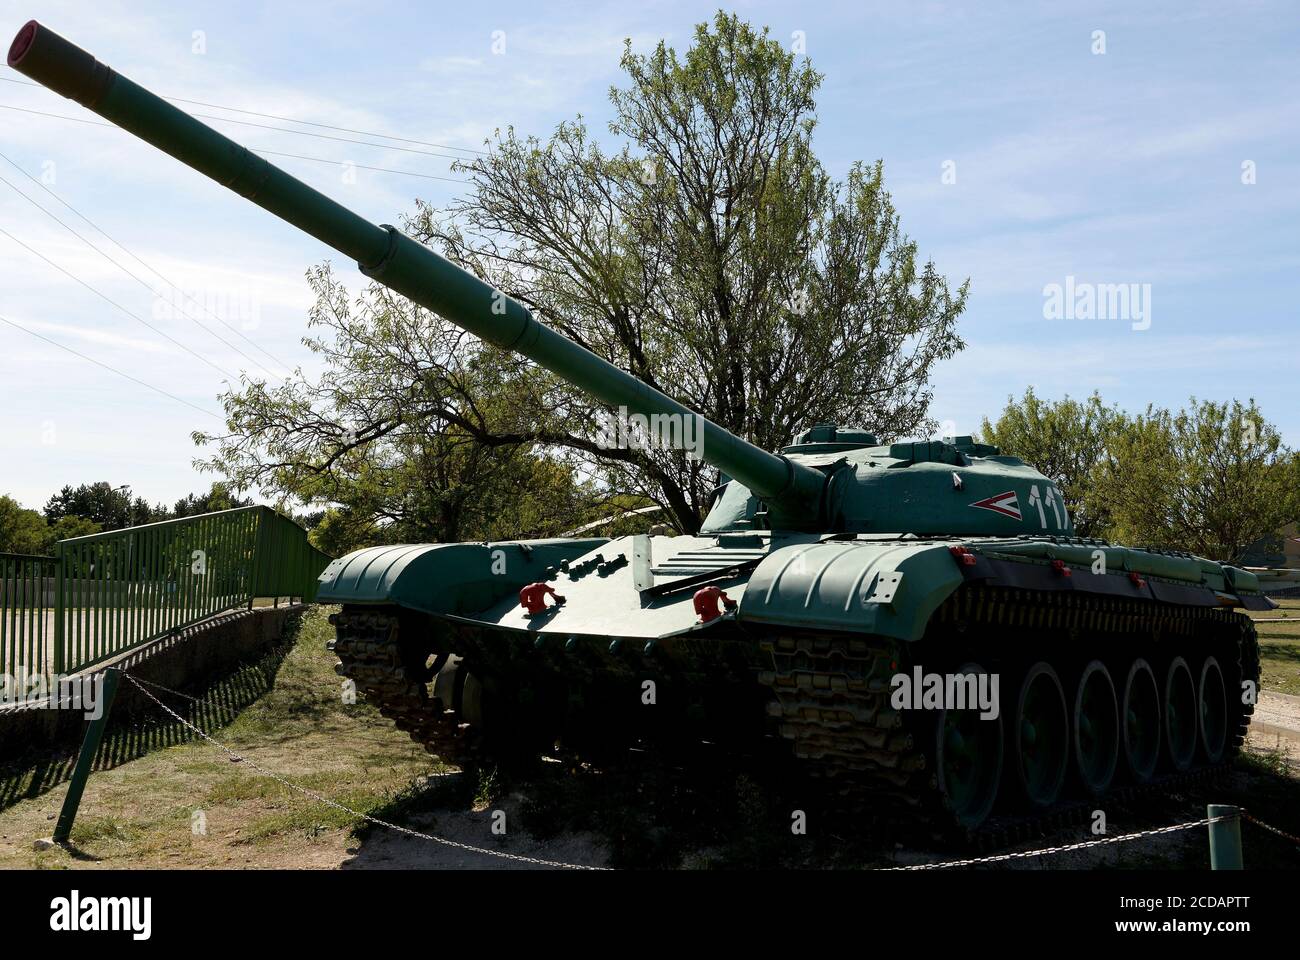 Der Hauptkampfpanzer T-72 wird im Museum ausgestellt.das Militärmuseum Zánka ist eine Ausstellung im Freien mit einer Vielzahl von Rüstungen, die von den ungarischen Verteidigungskräften verwendet werden. Zánka ist ein Dorf in Veszprém Grafschaft am Ufer des Plattensees, 150 km südwestlich der Hauptstadt Budapest, Ungarn. Stockfoto